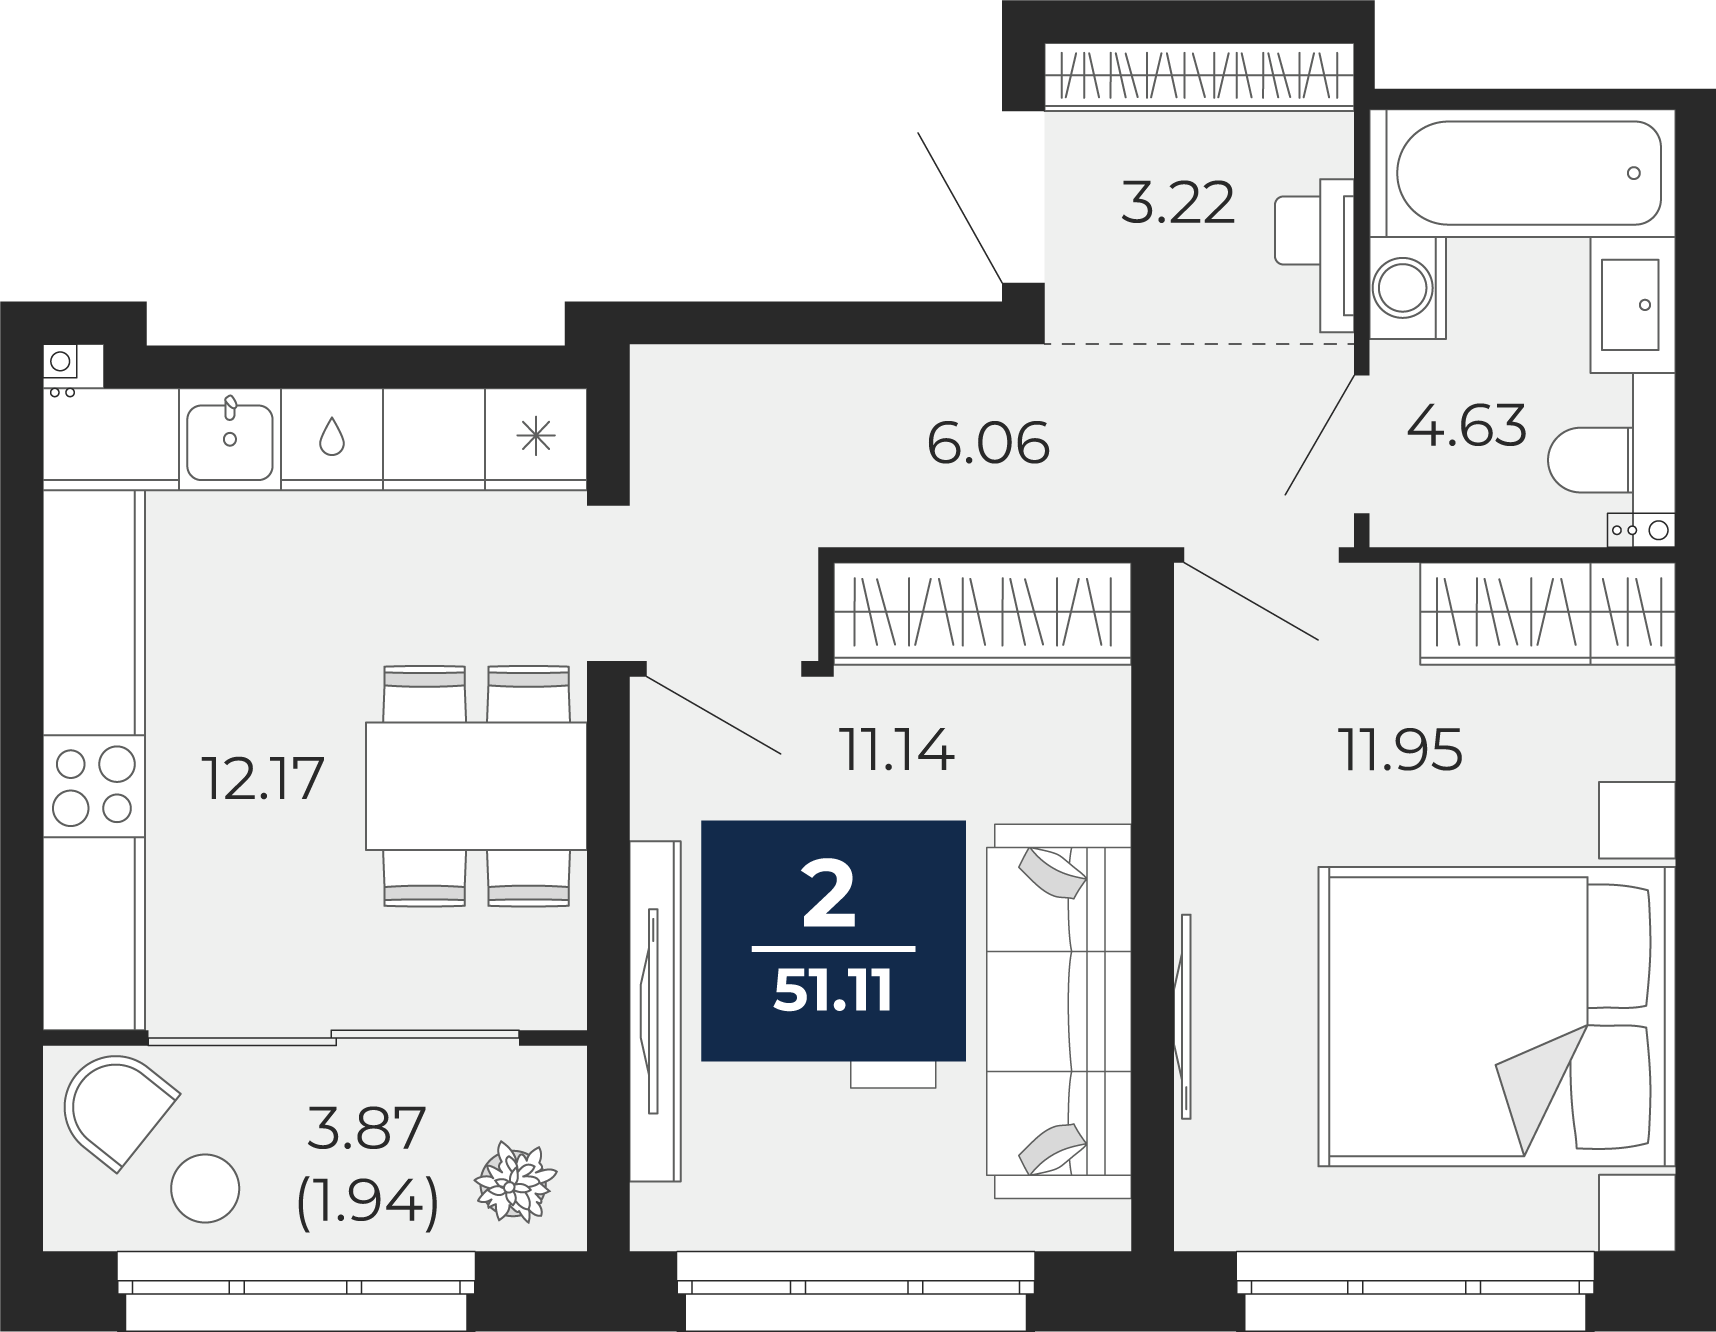 Квартира № 19, 2-комнатная, 51.11 кв. м, 5 этаж